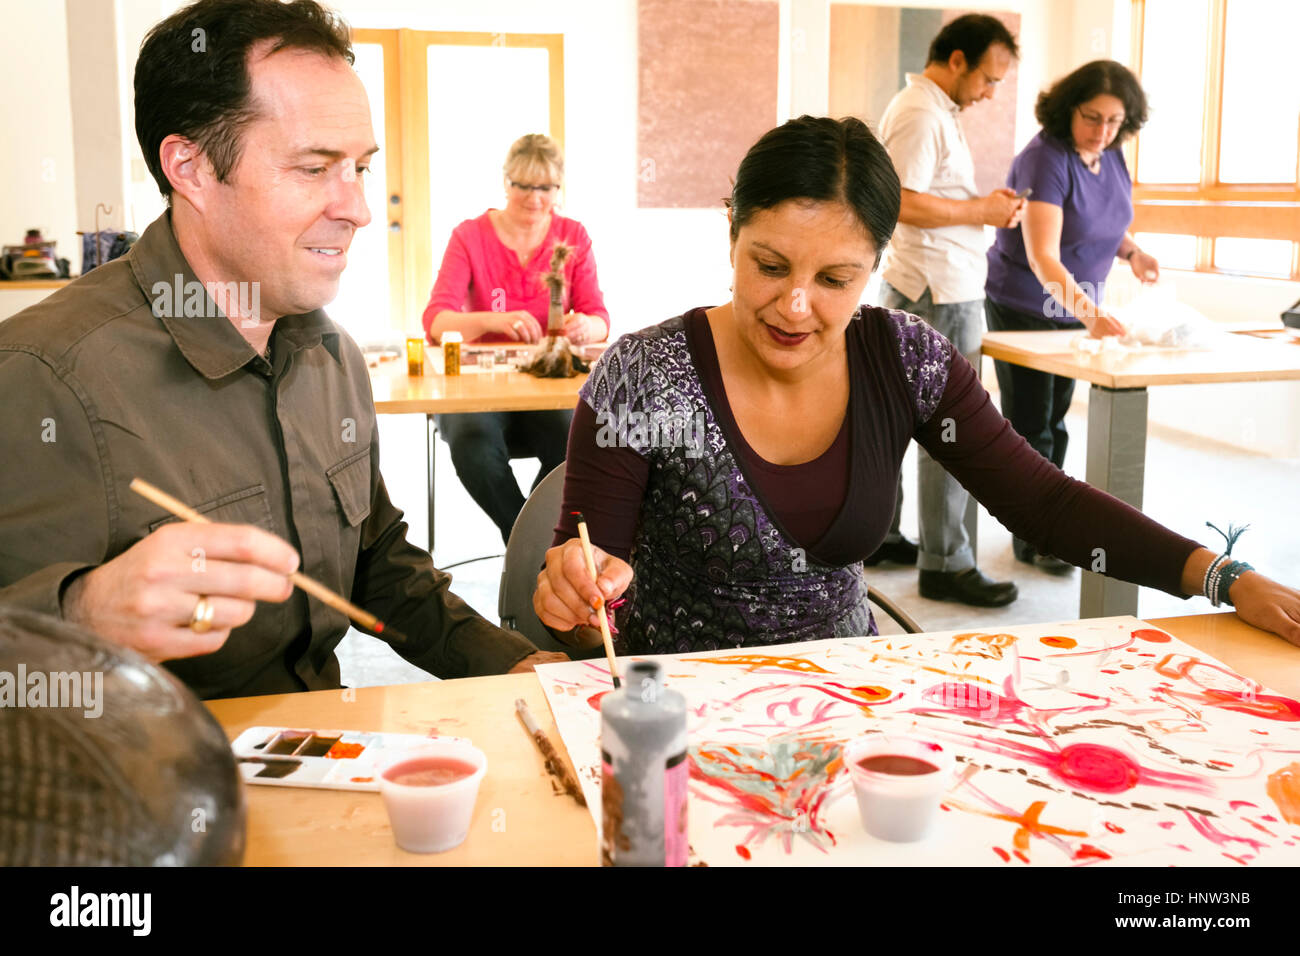 Les gens dans la classe d'art peinture Banque D'Images